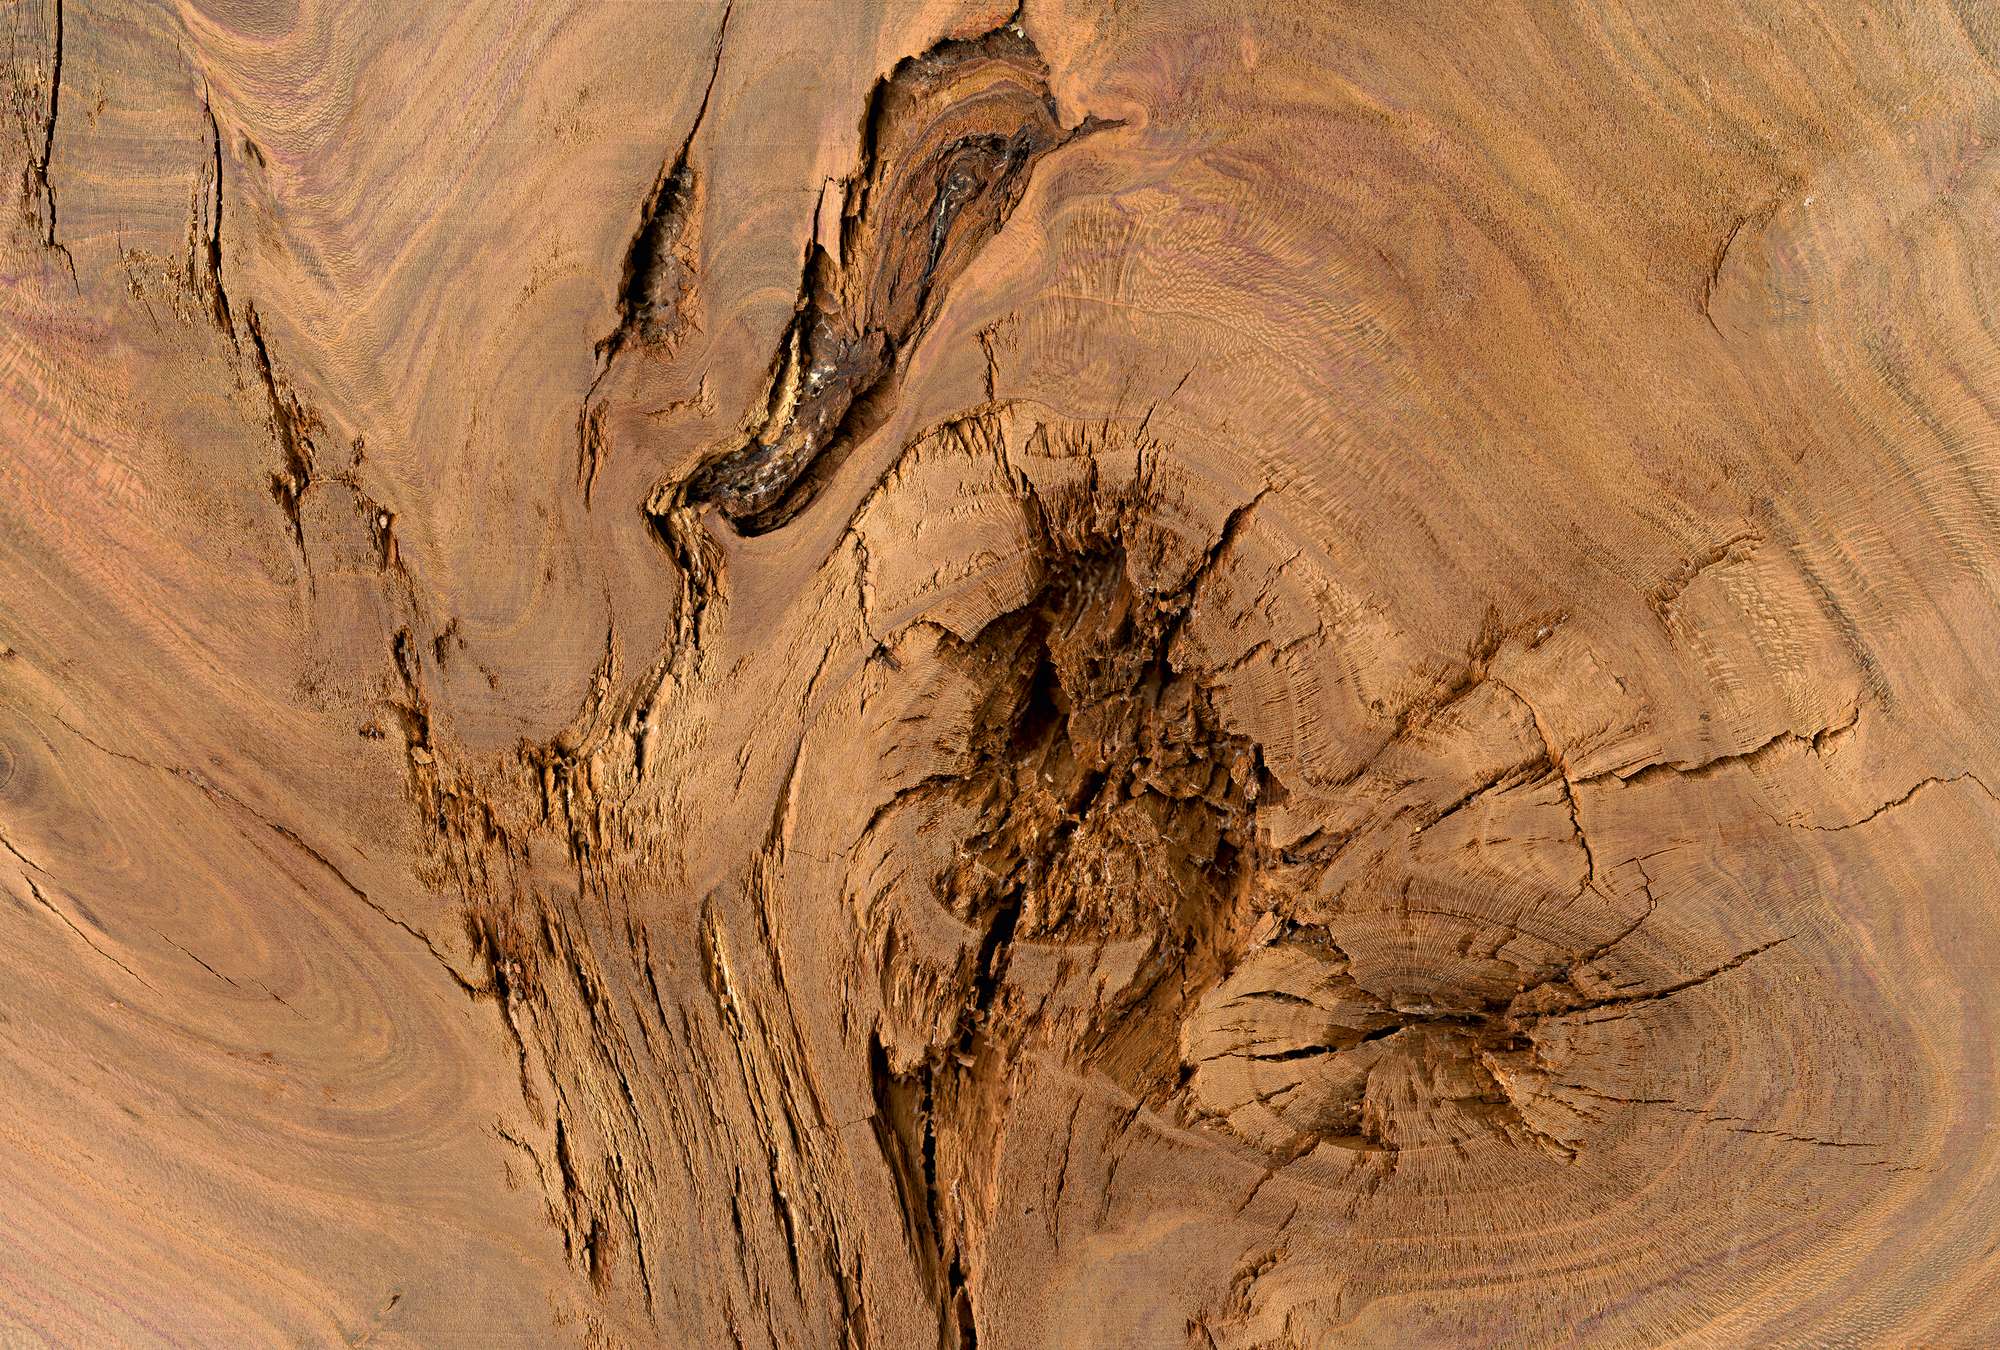             Detail of a tree trunk - oak tree
        